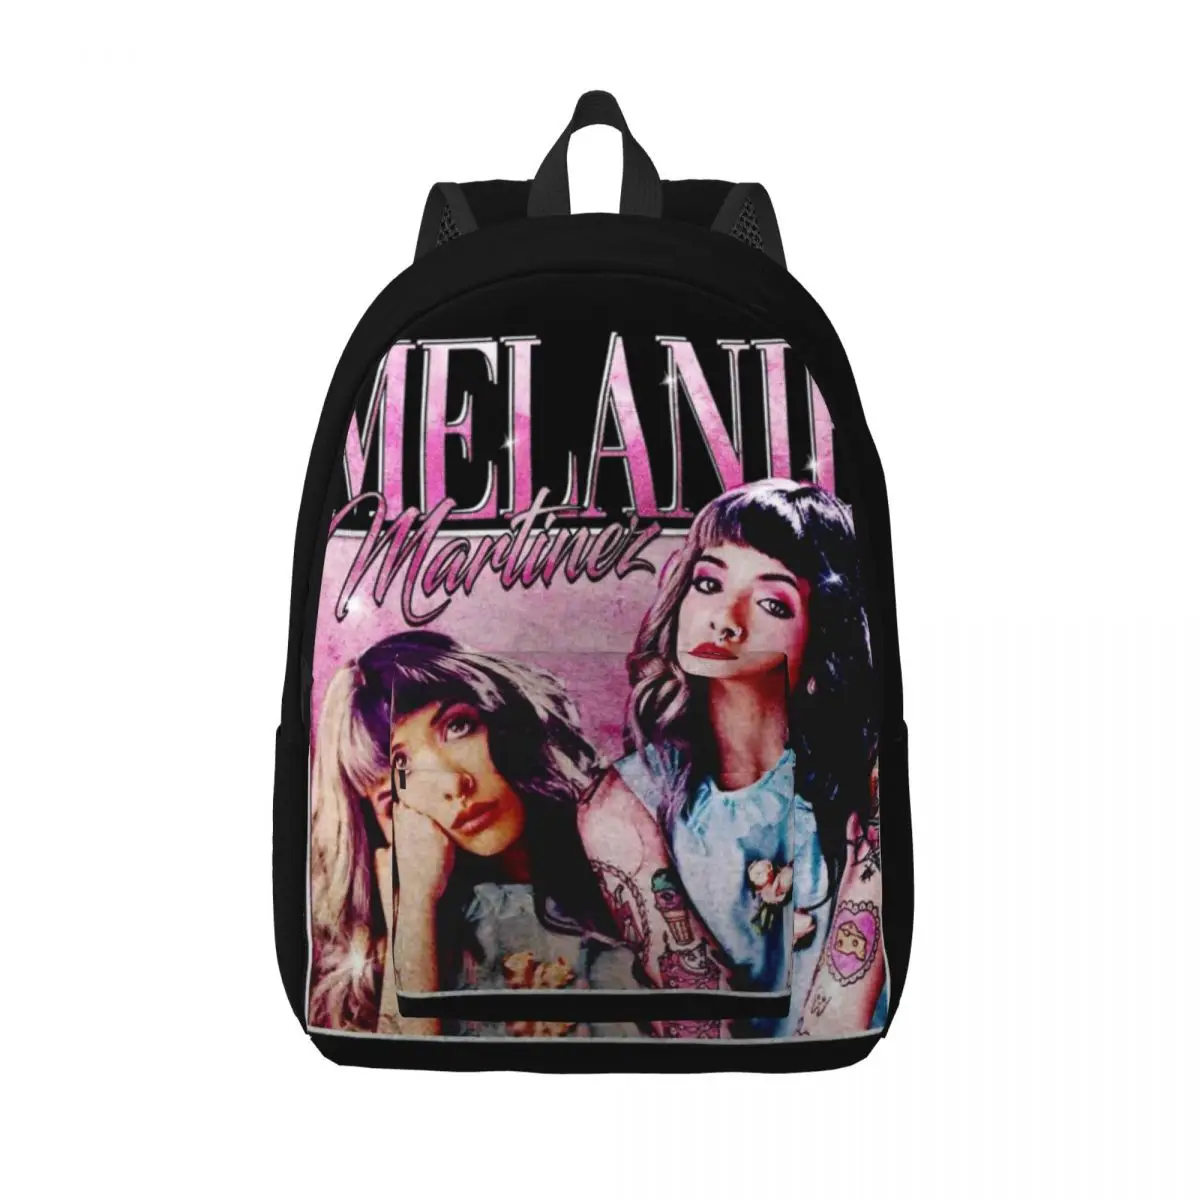 

Рюкзак для мальчиков и девочек певец мелини Мартинез, школьный ранец для учебников, рюкзак для прослушивания музыки, спортивная сумка для начальной школы детского сада